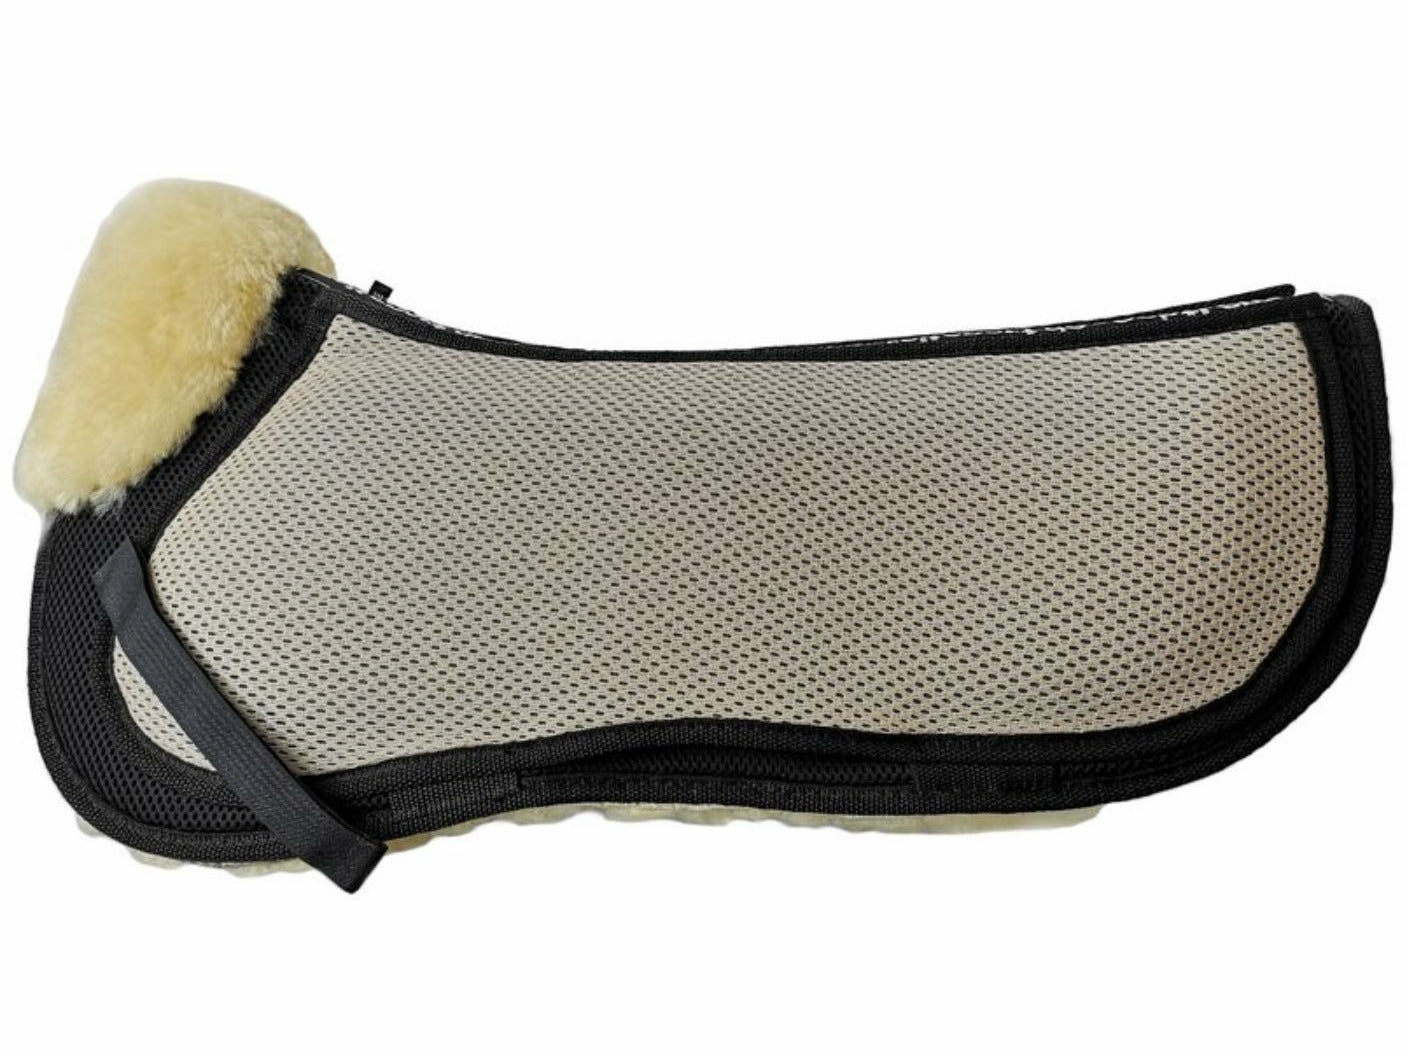 Engel - Le coussin de selle AirTec Plus en peau d'agneau peut être recouvert d'un tissu fonctionnel